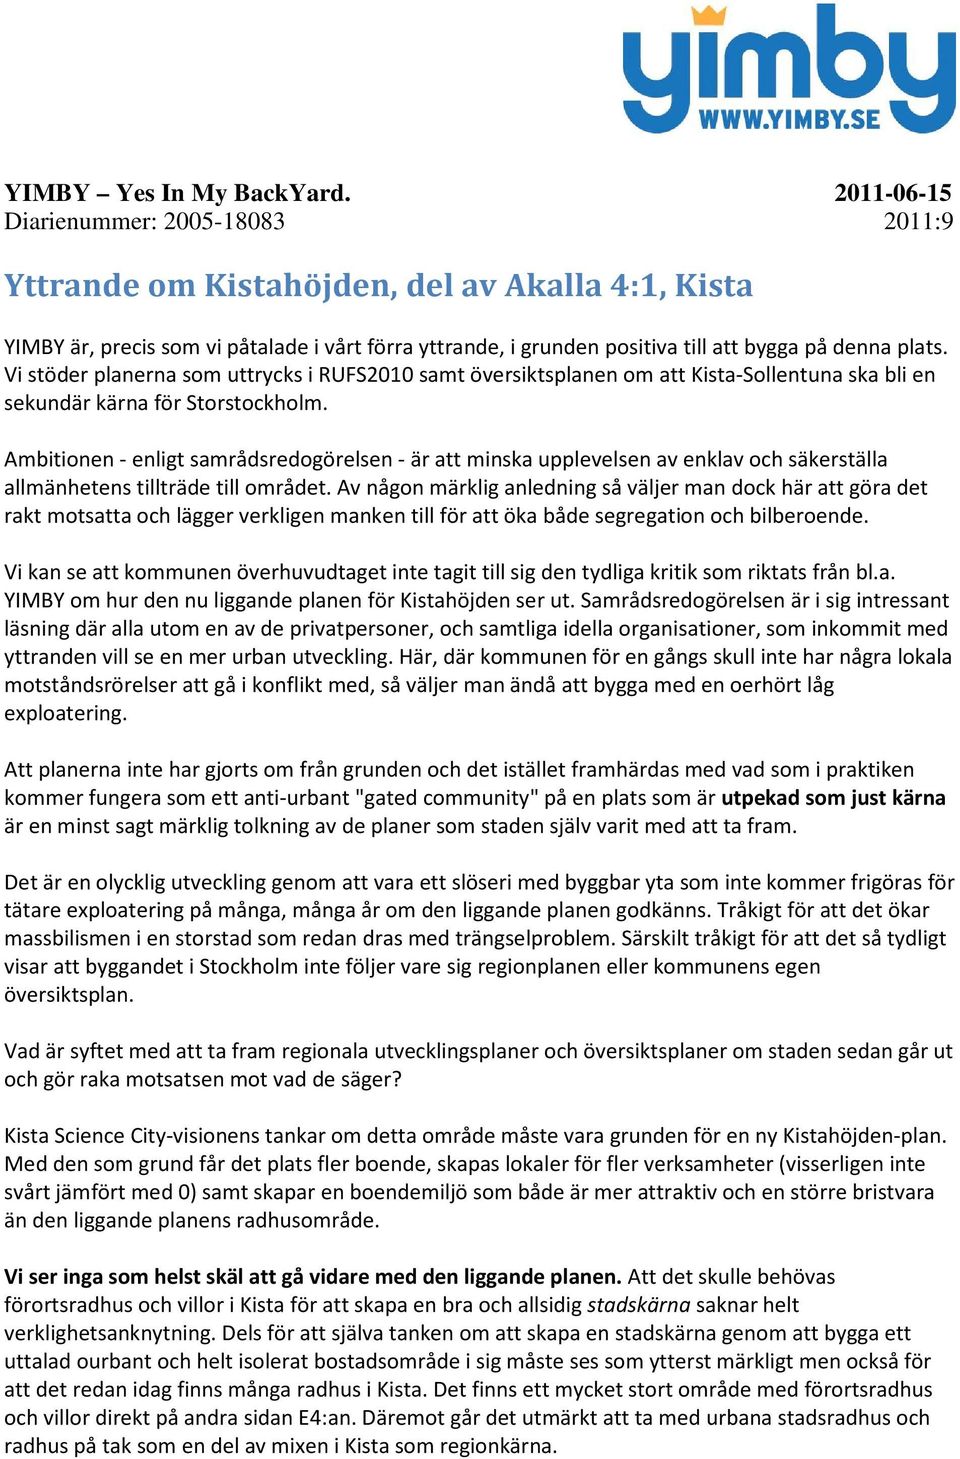 Vi stöder planerna som uttrycks i RUFS2010 samt översiktsplanen om att Kista-Sollentuna ska bli en sekundär kärna för Storstockholm.